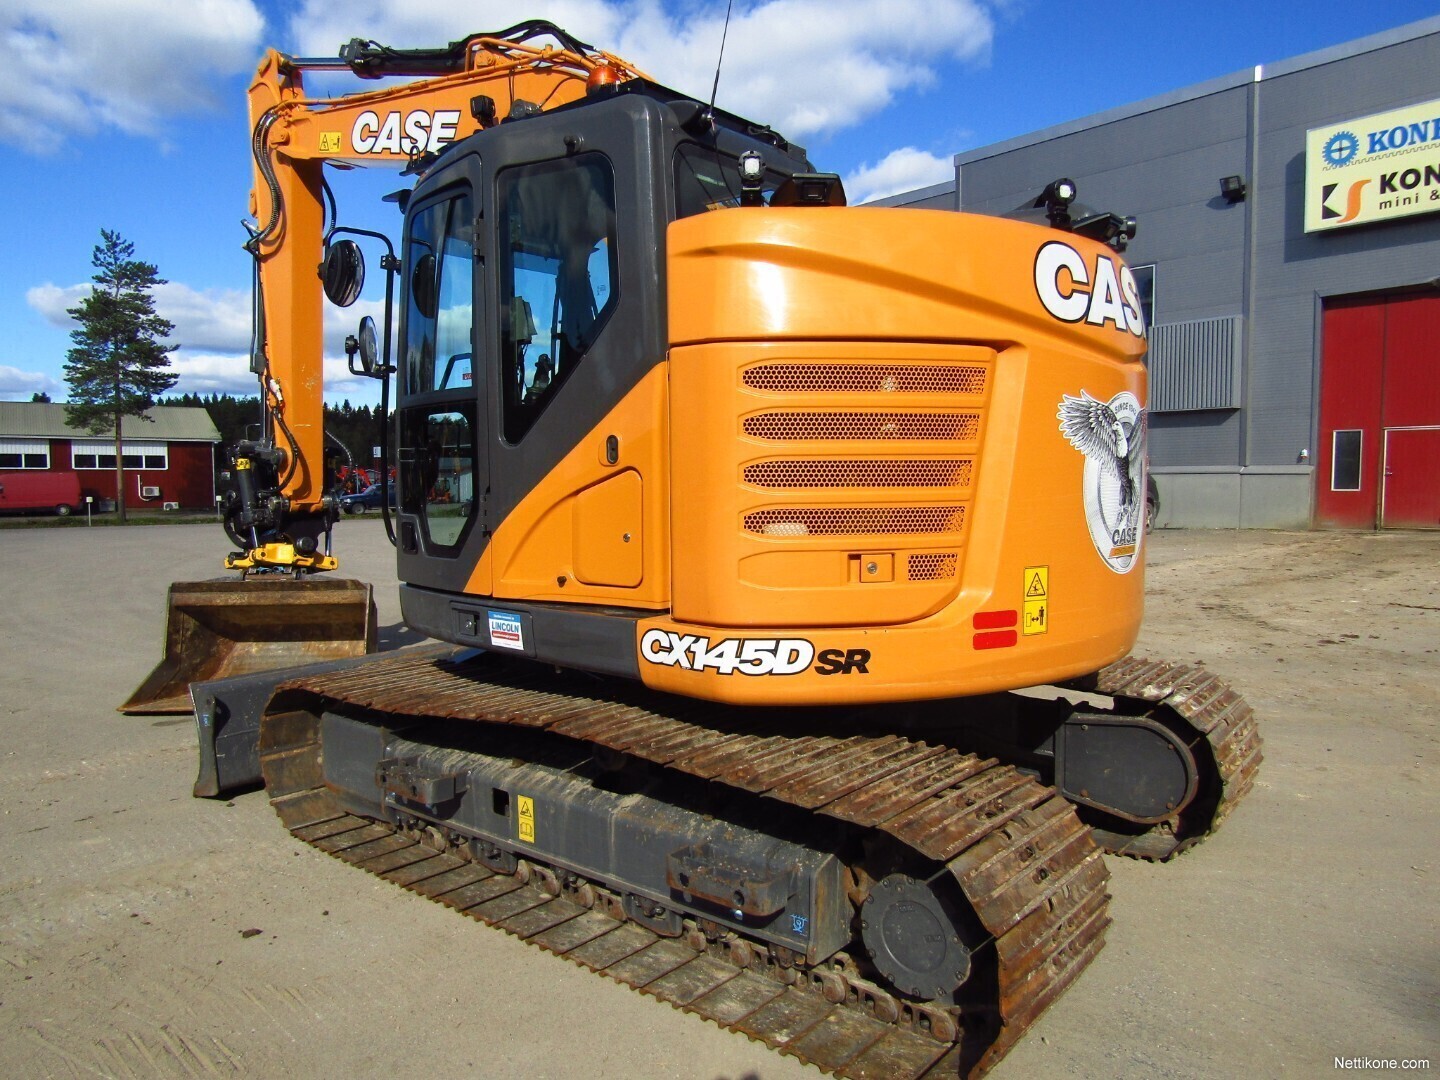 CASE CX145DSR Crawler Excavators